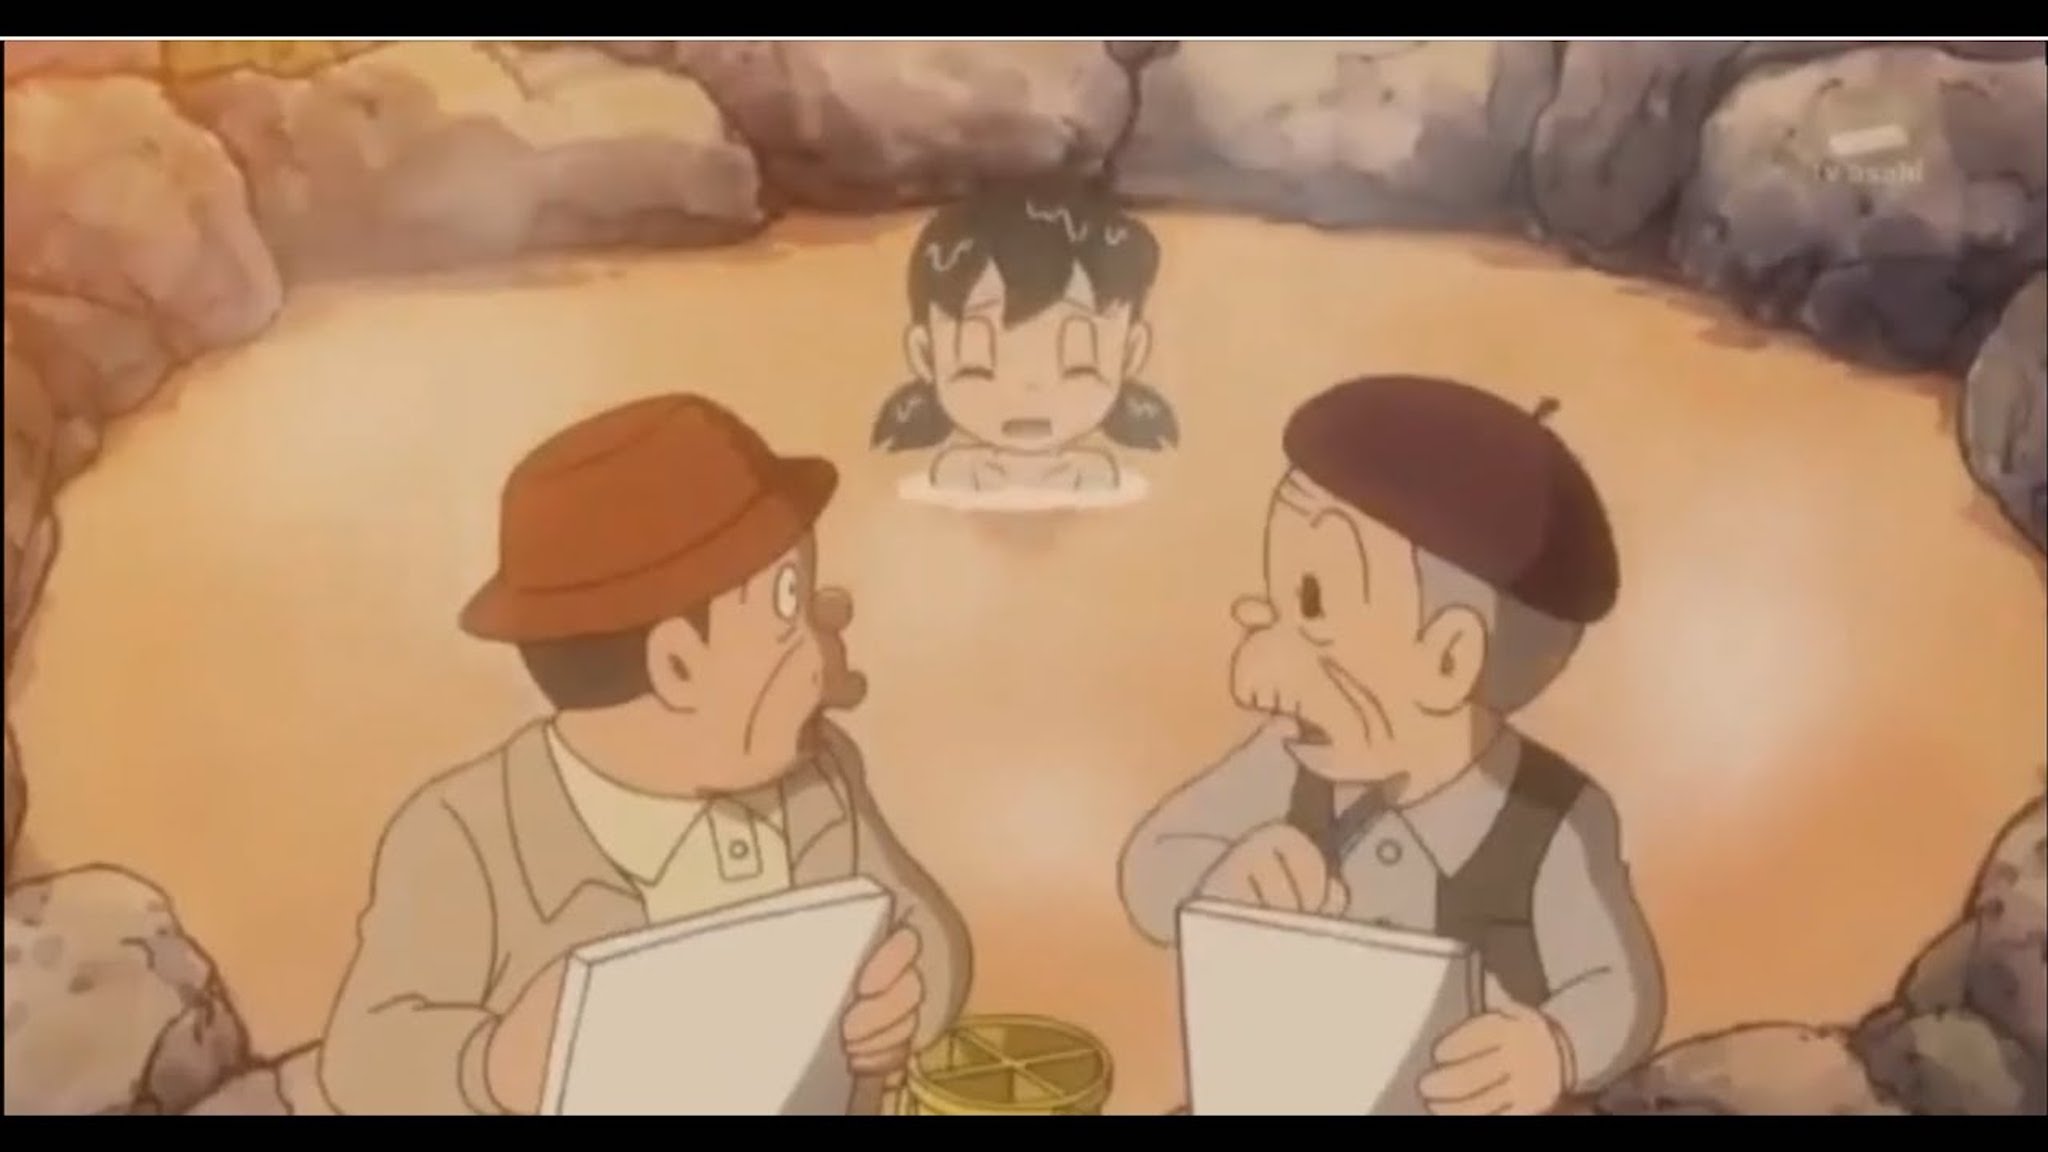 Nếu lọt vào truyện Doraemon, 12 cung hoàng đạo trở thành nhân vật nào? -  2sao